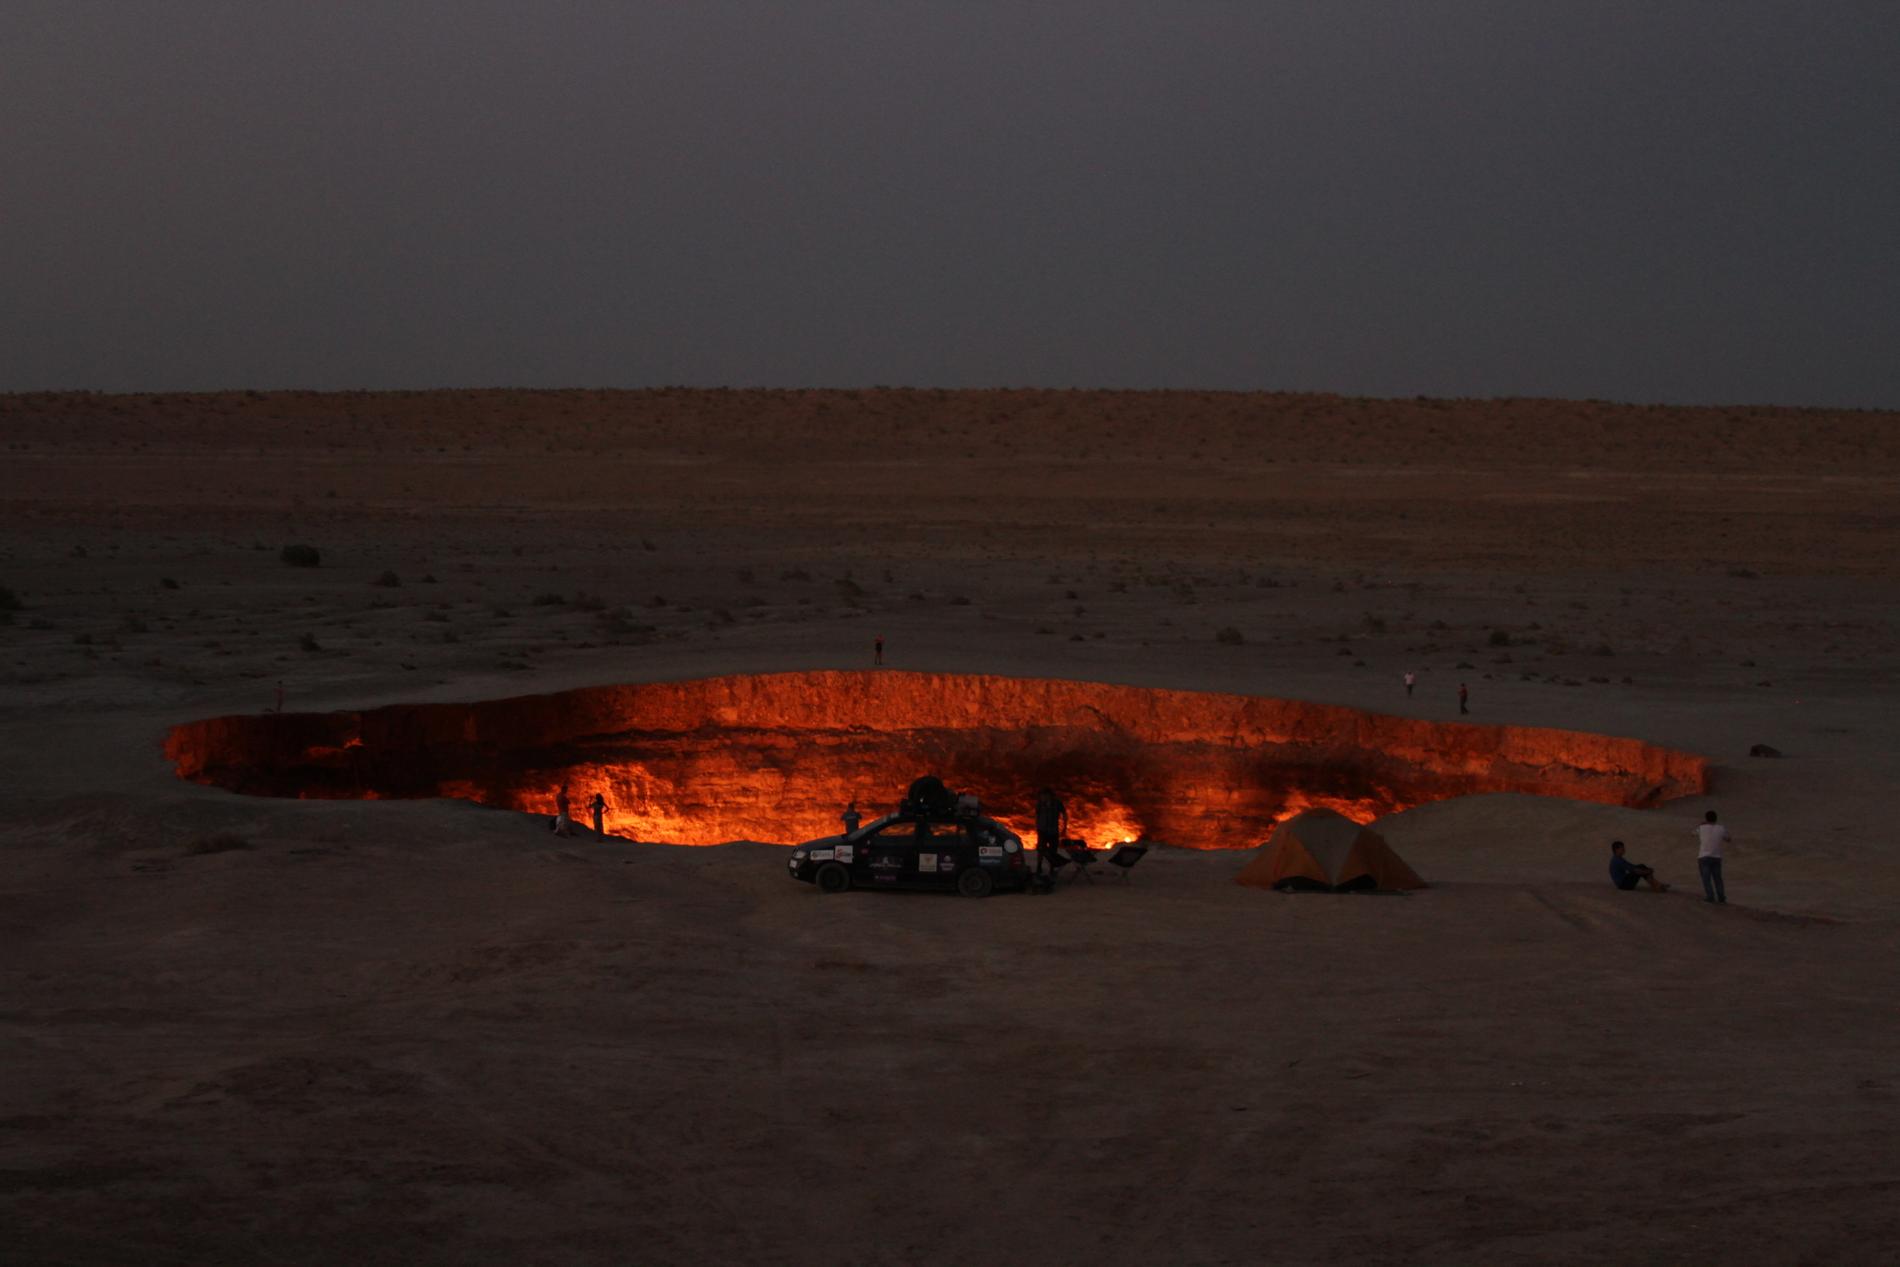  I Turkmenistan stoppet laget bilen ved Darvaza, et brennende hull i bakken. - Det er et utrolig stilig sight! Sovjetunionen boret etter gass, så ble det et litt stort hull. De satte fyr på det, så har det brunnet siden, sier Anders.  